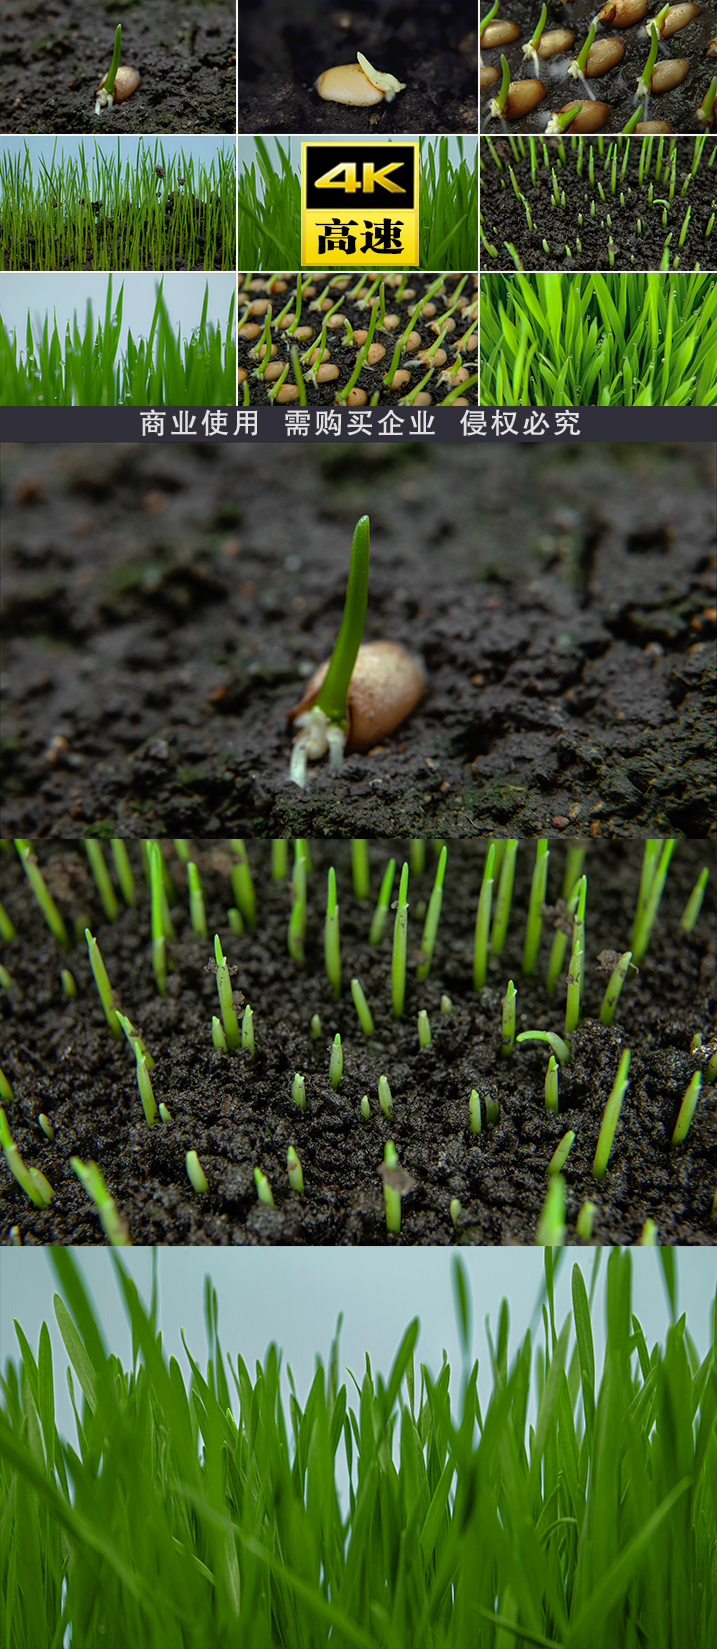 种子破土而出麦子生命力春春天生命立春土地